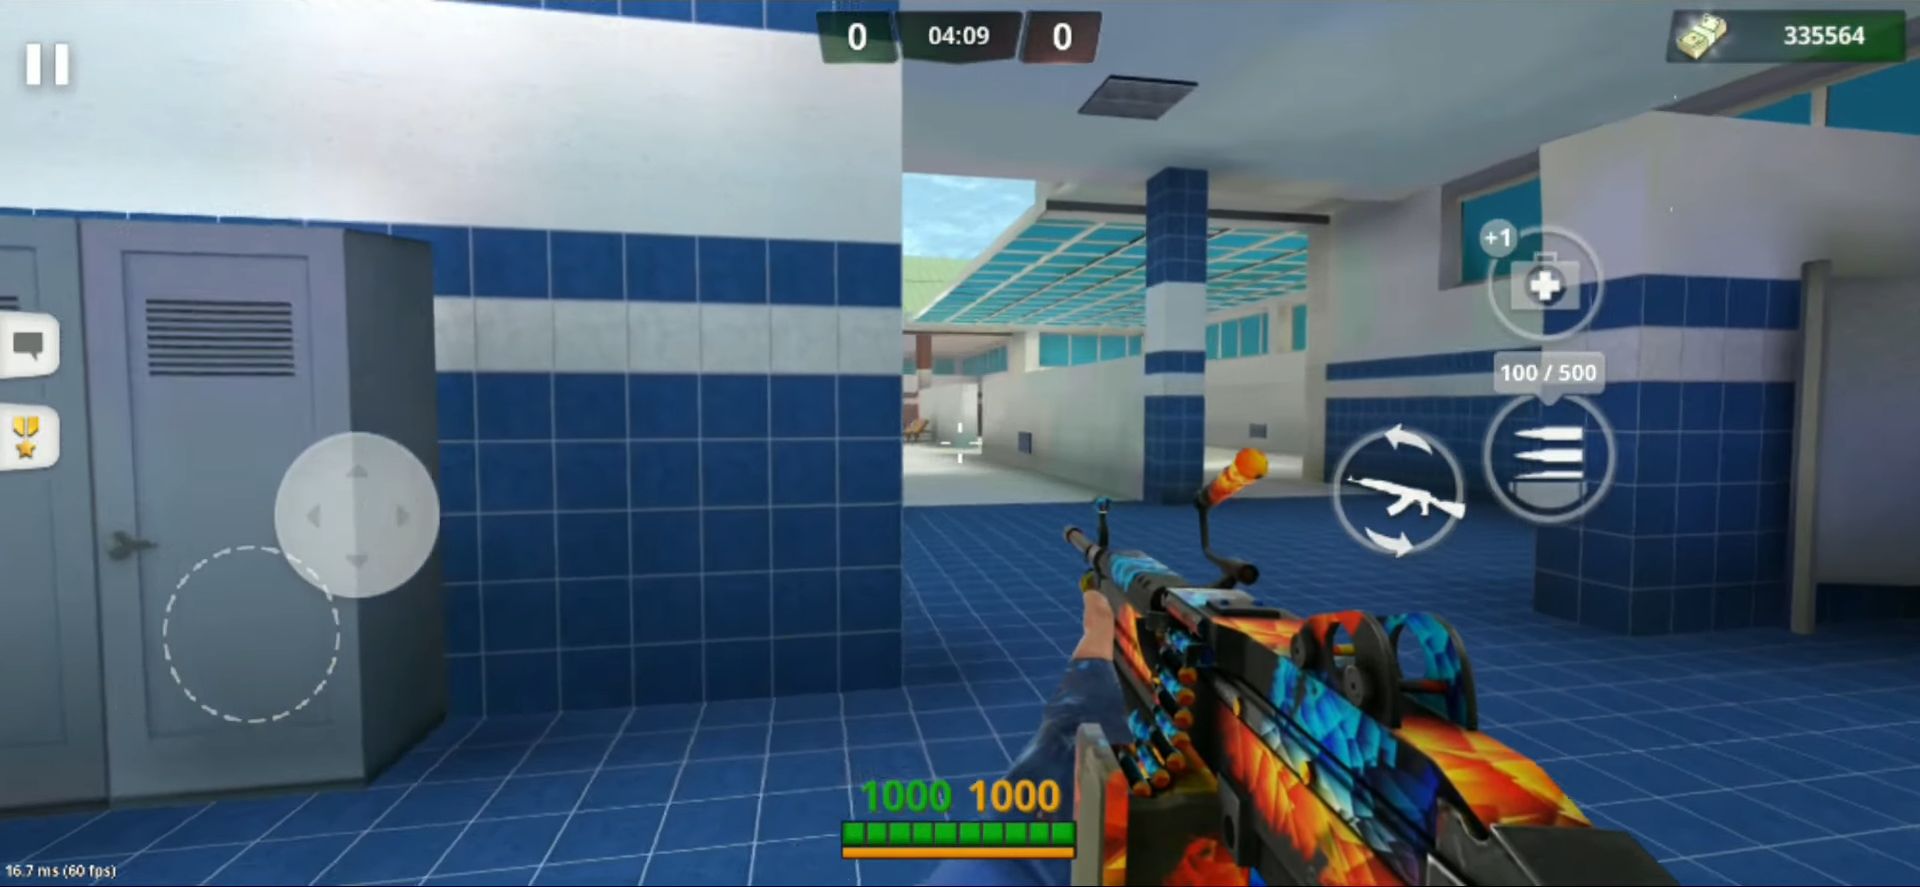 Special Ops: FPS PvP War-Online gun shooting games screenshot 1